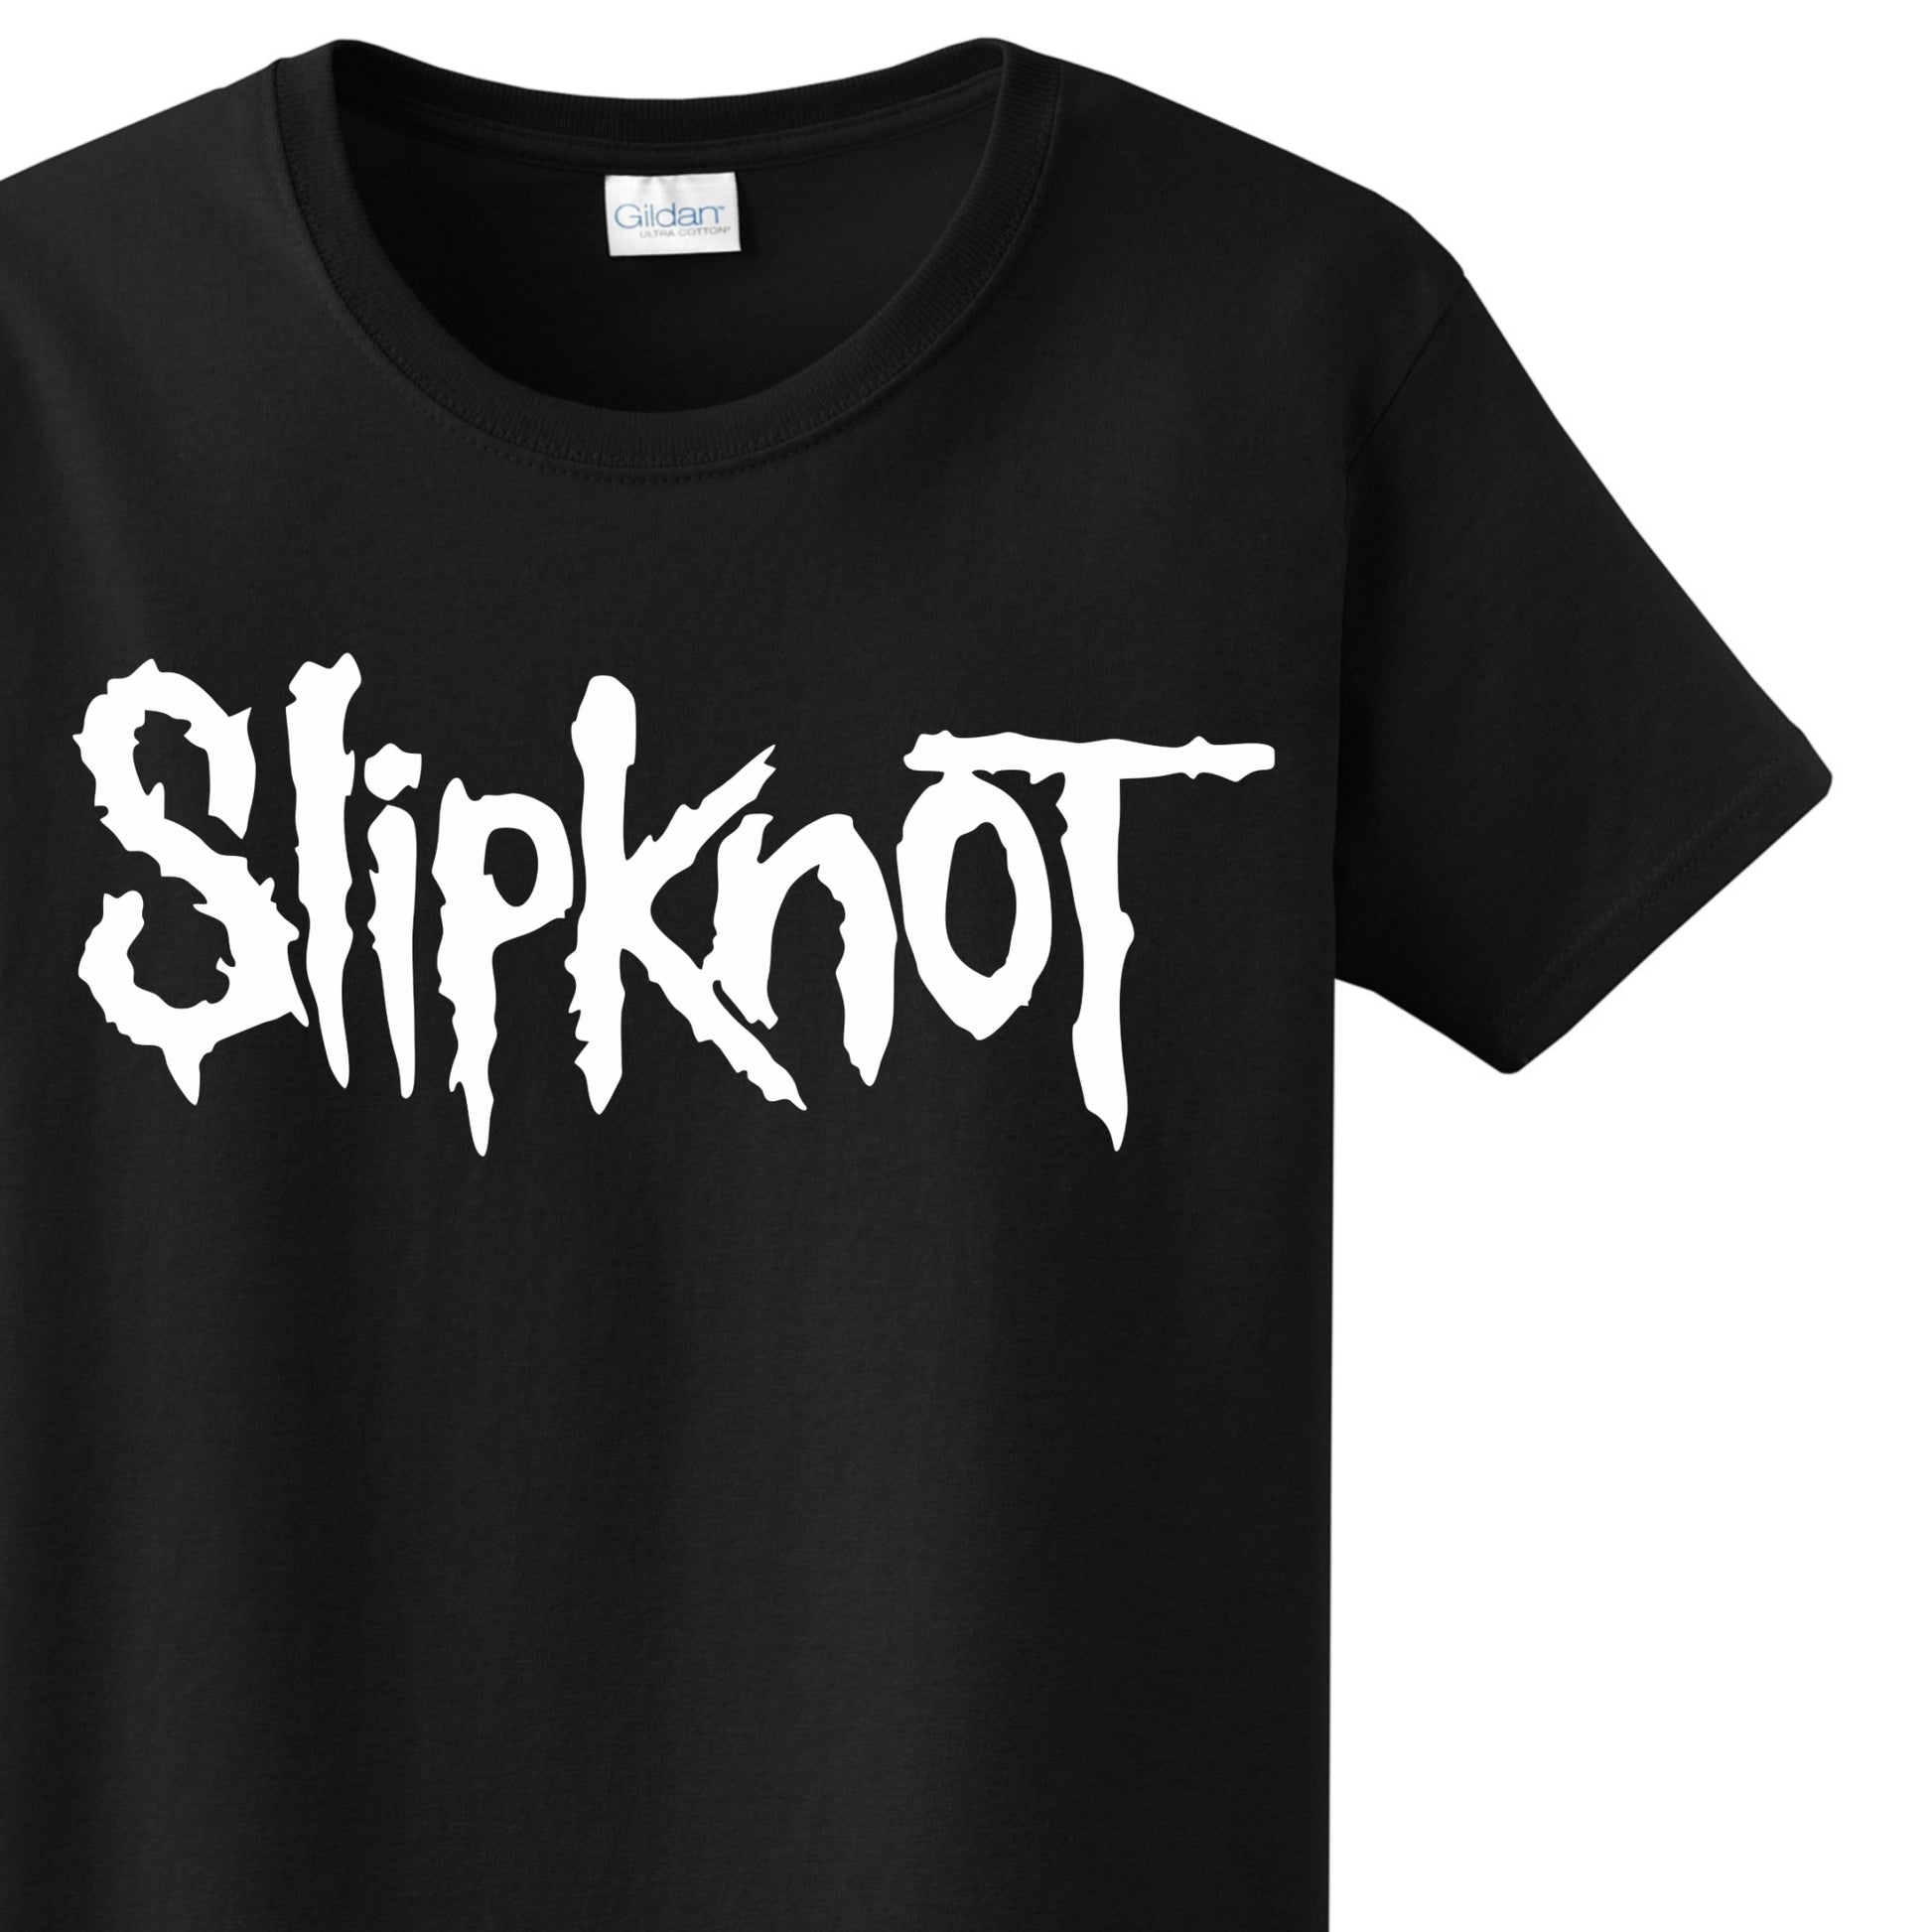 Radical Band  Men's Shirts - Slipknot (Black) - MYSTYLEMYCLOTHING